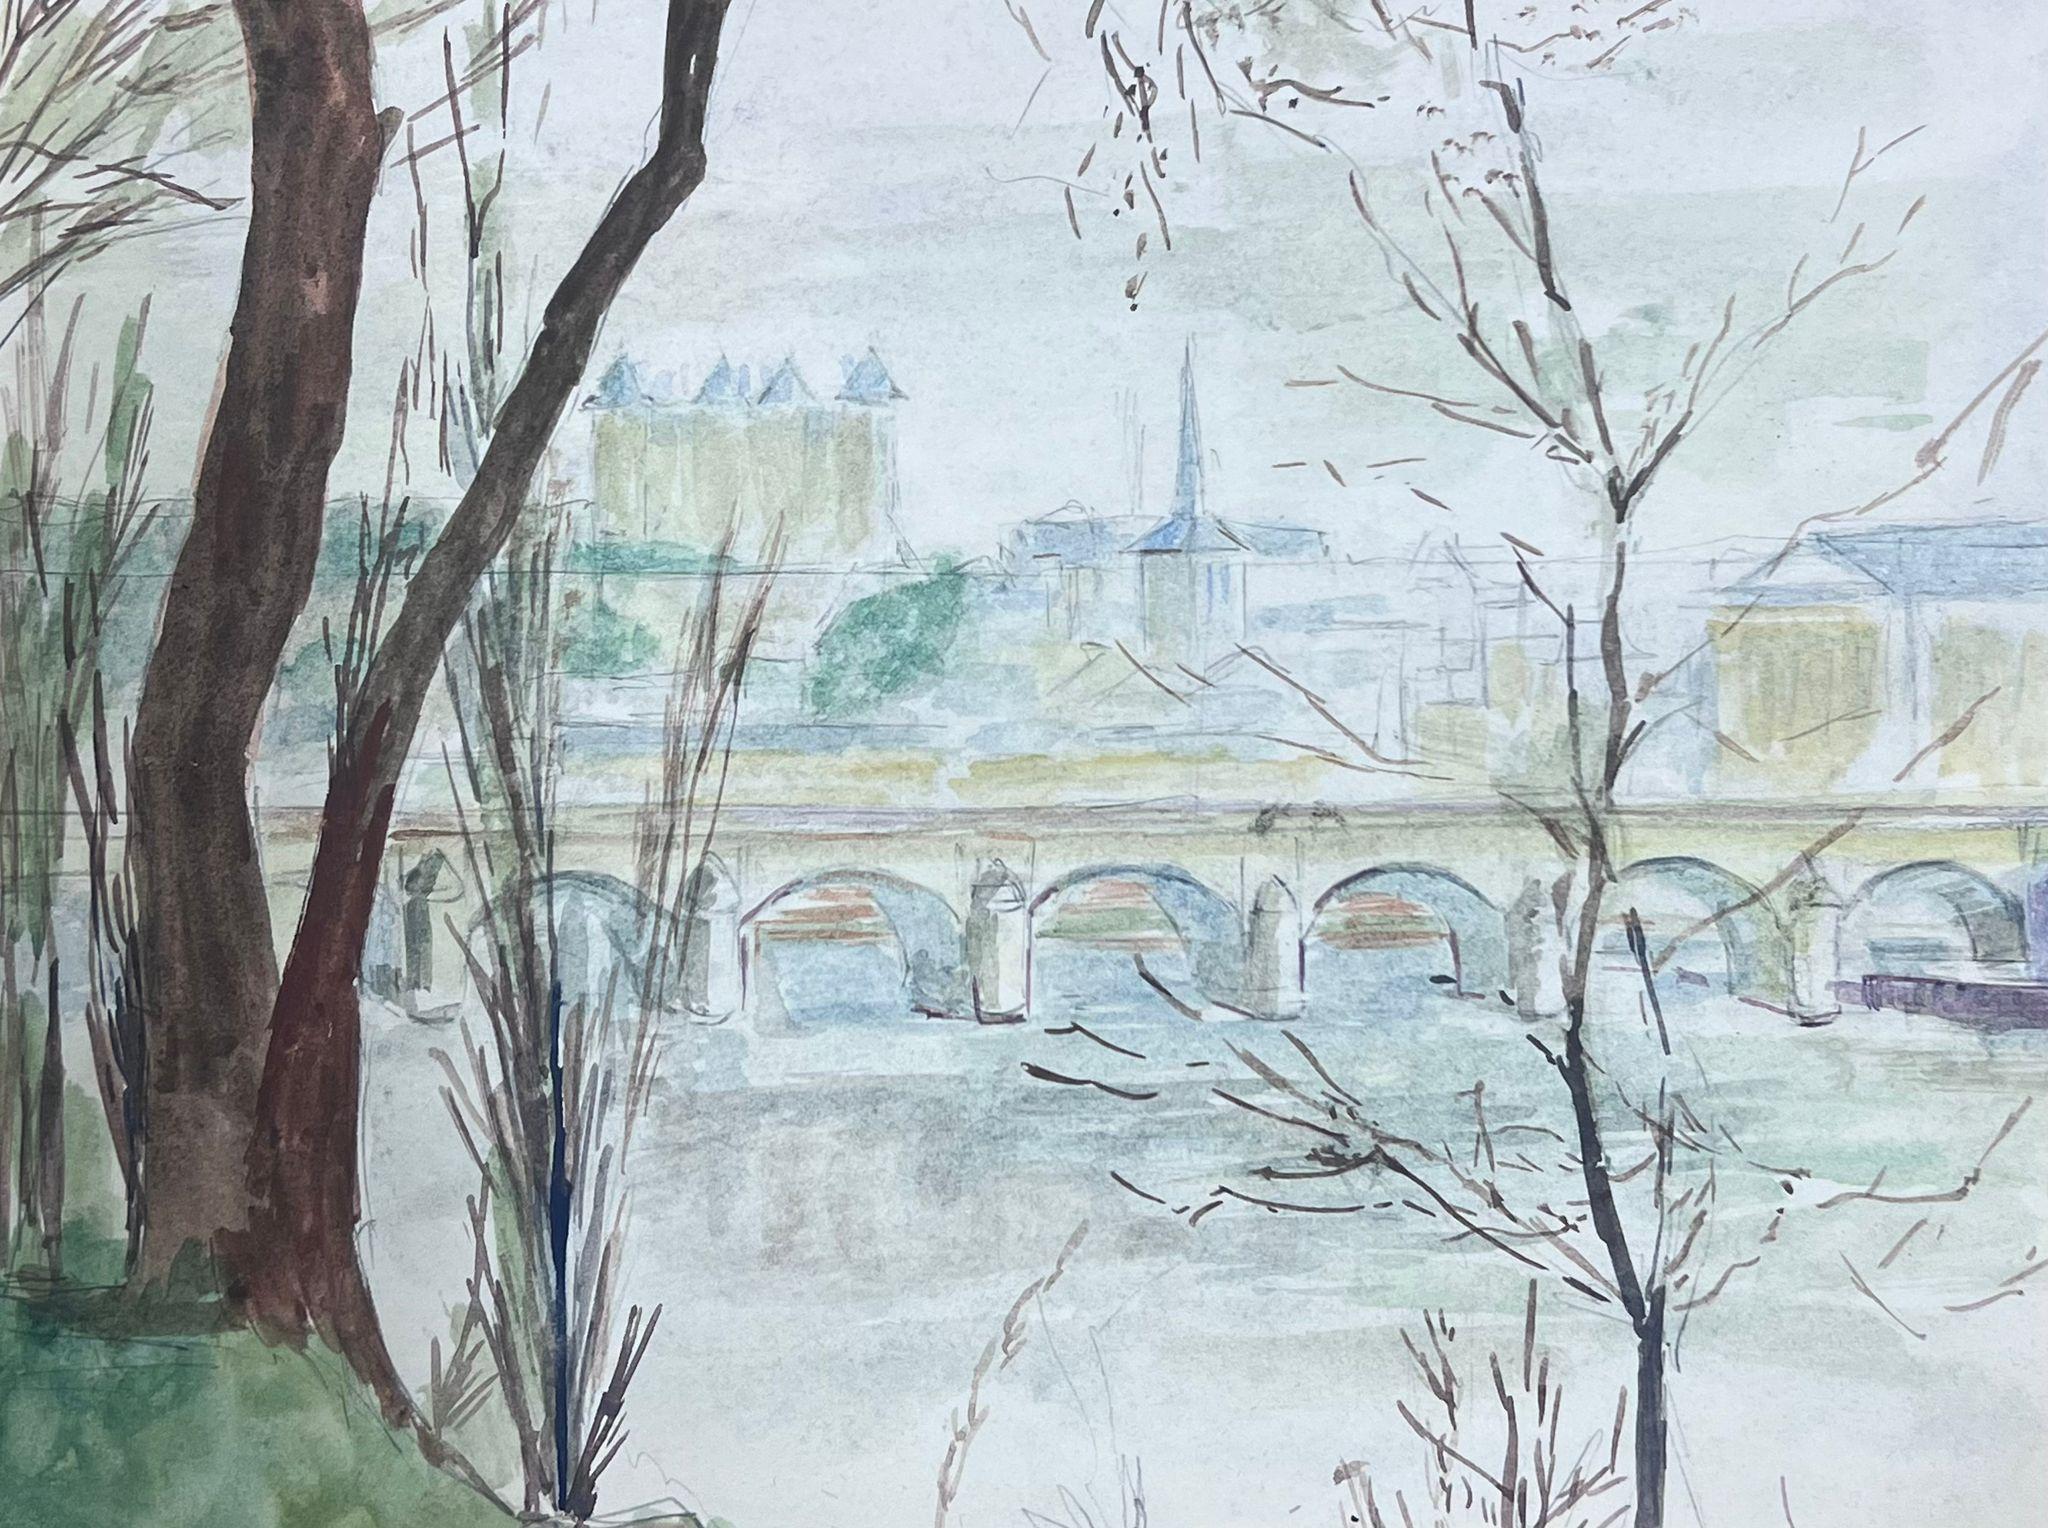 Französische Landschaft
von Guy Nicod
(Französisch 1923 - 2021)
Aquarell auf Künstlerpapier, ungerahmt
Gemälde : 8 x 10 Zoll
Herkunft: Künstlernachlass, Frankreich
Zustand: sehr guter und gesunder Zustand